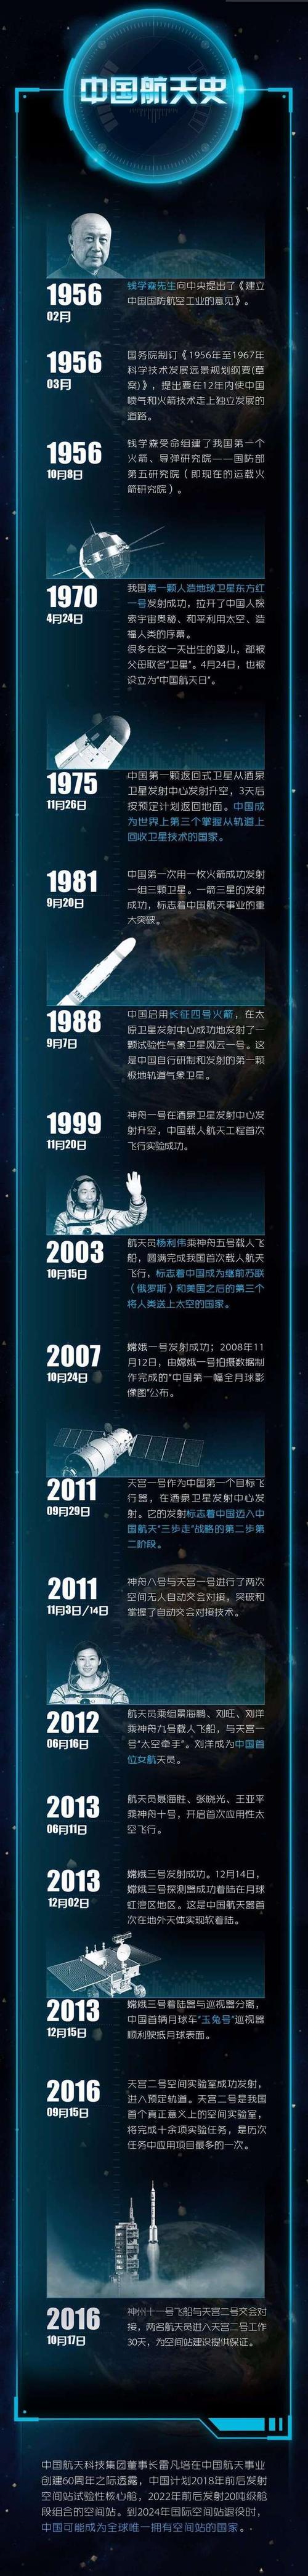 航天有奖科普 | 作为 chinese 的你还不了解中国航天史吗?_手机搜狐网